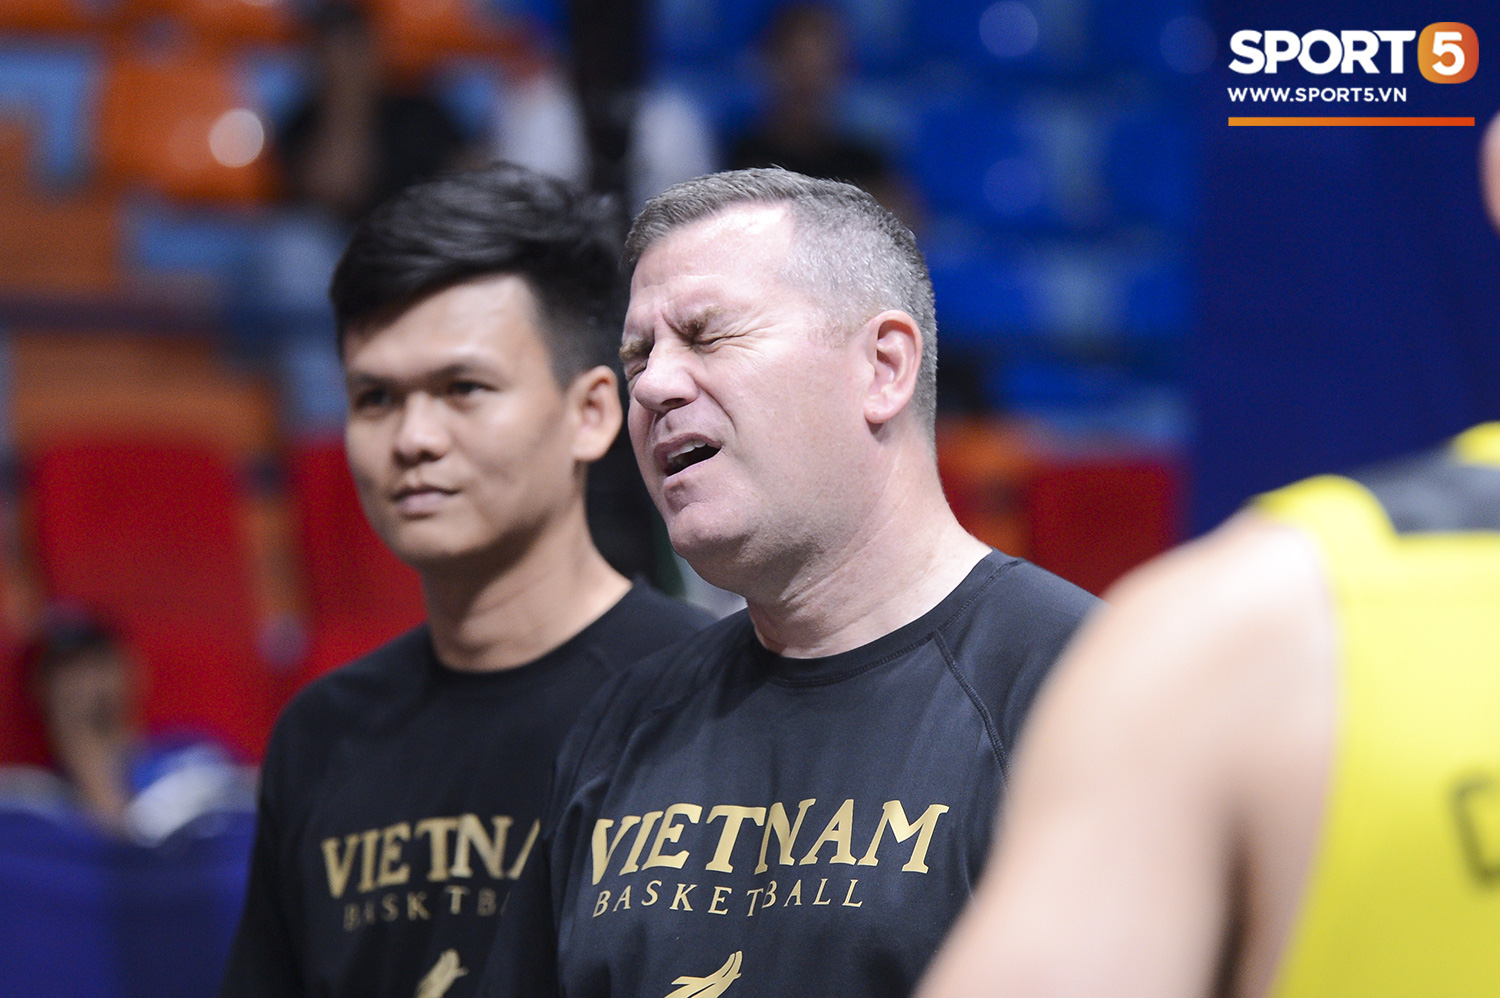 Đội tuyển bóng rổ 3x3 Việt Nam lao vào tập luyện buổi duy nhất sau chuyến bay cực hình tới Philippines - Ảnh 5.